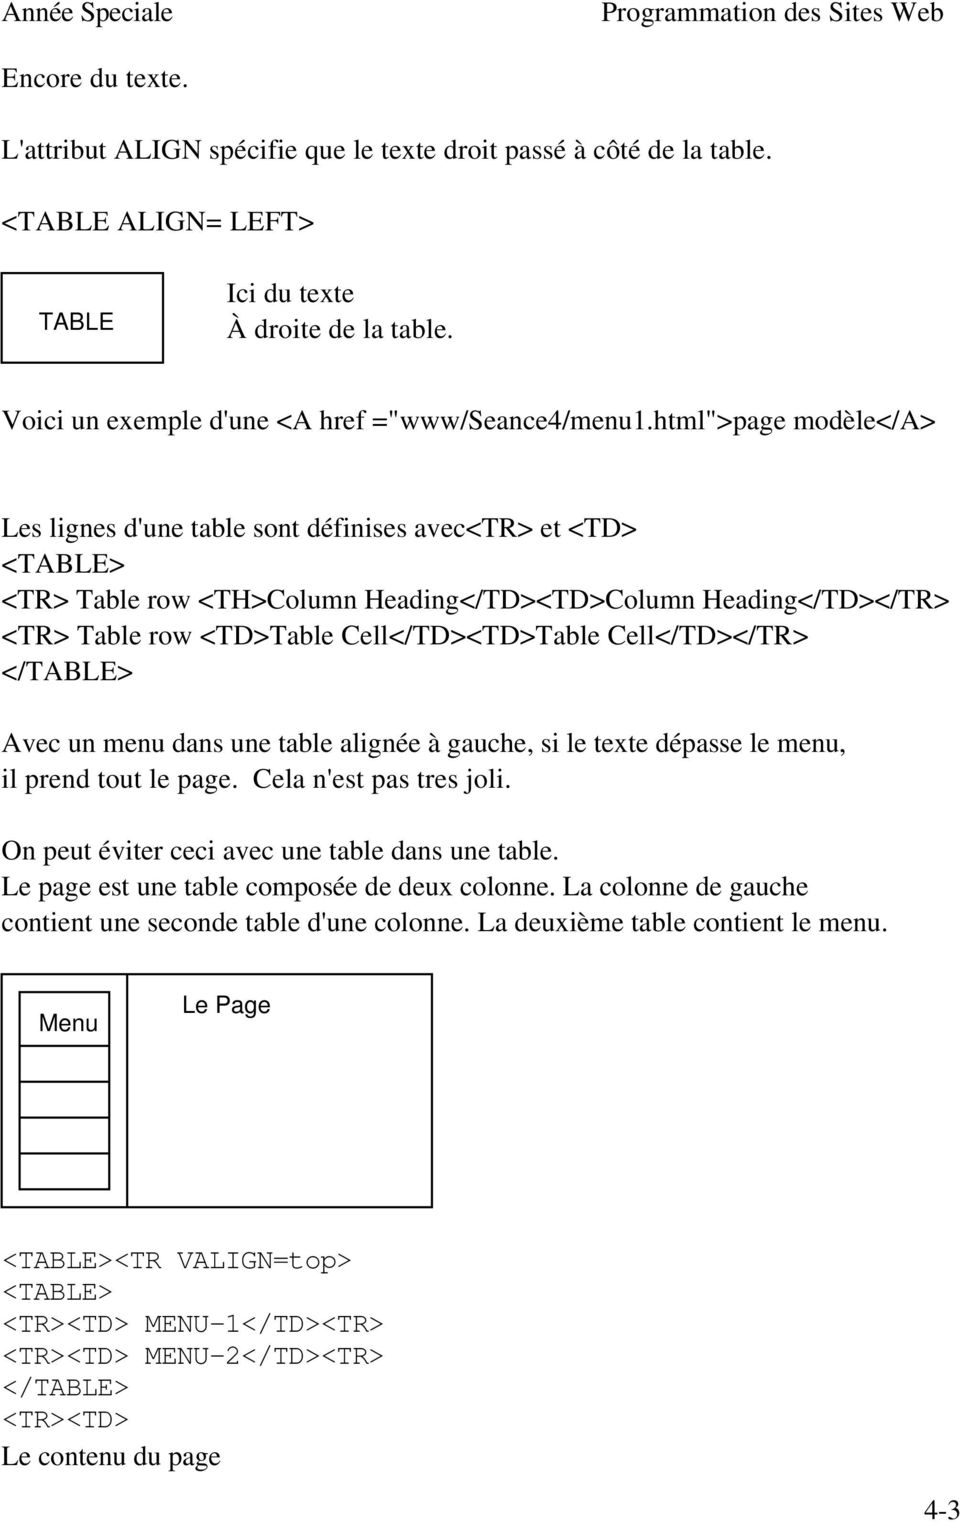 Cell</TD></TR> </TABLE> Avec un menu dans une table alignée à gauche, si le texte dépasse le menu, il prend tout le page. Cela n'est pas tres joli. On peut éviter ceci avec une table dans une table.